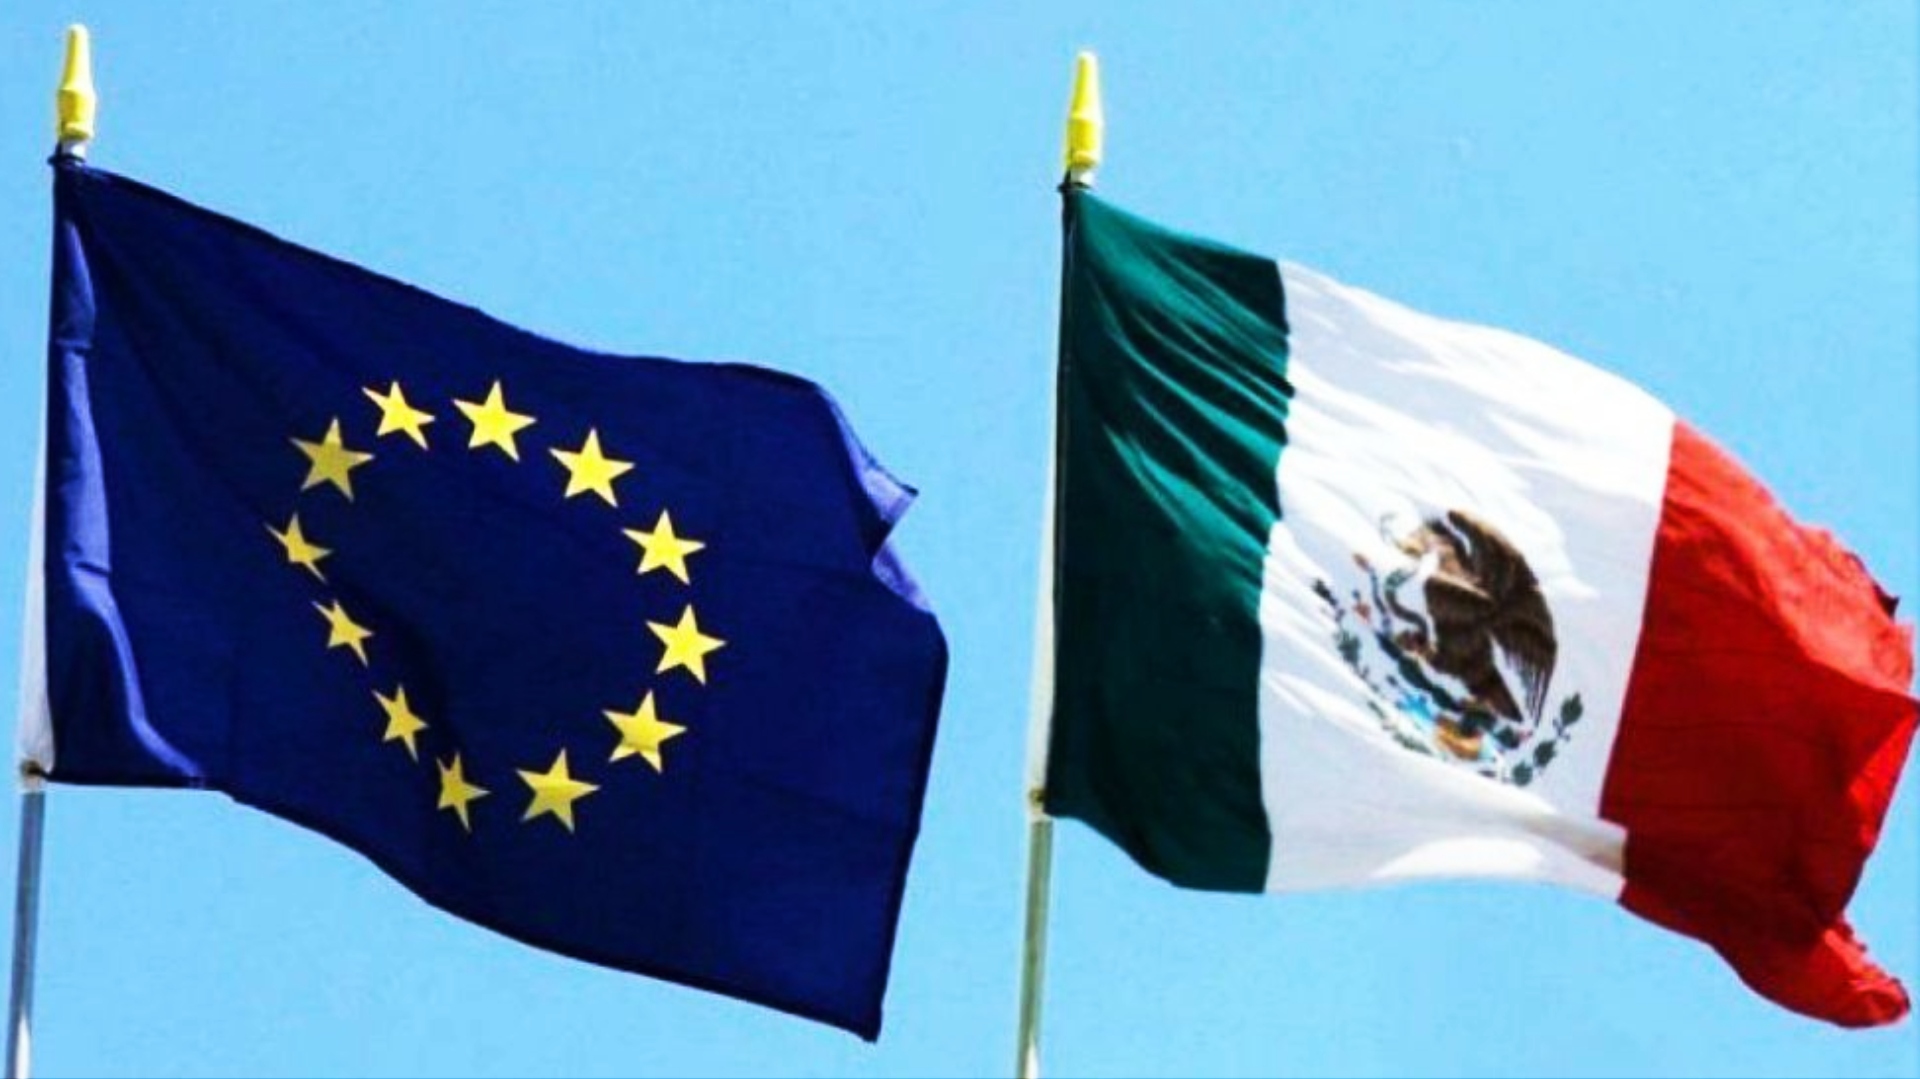 Las relaciones económicas y políticas entre México y la UE se rigen por un Acuerdo Global de 1997. Desde 2008, México es un gran socio estratégico de la UE (Foto: Twitter)